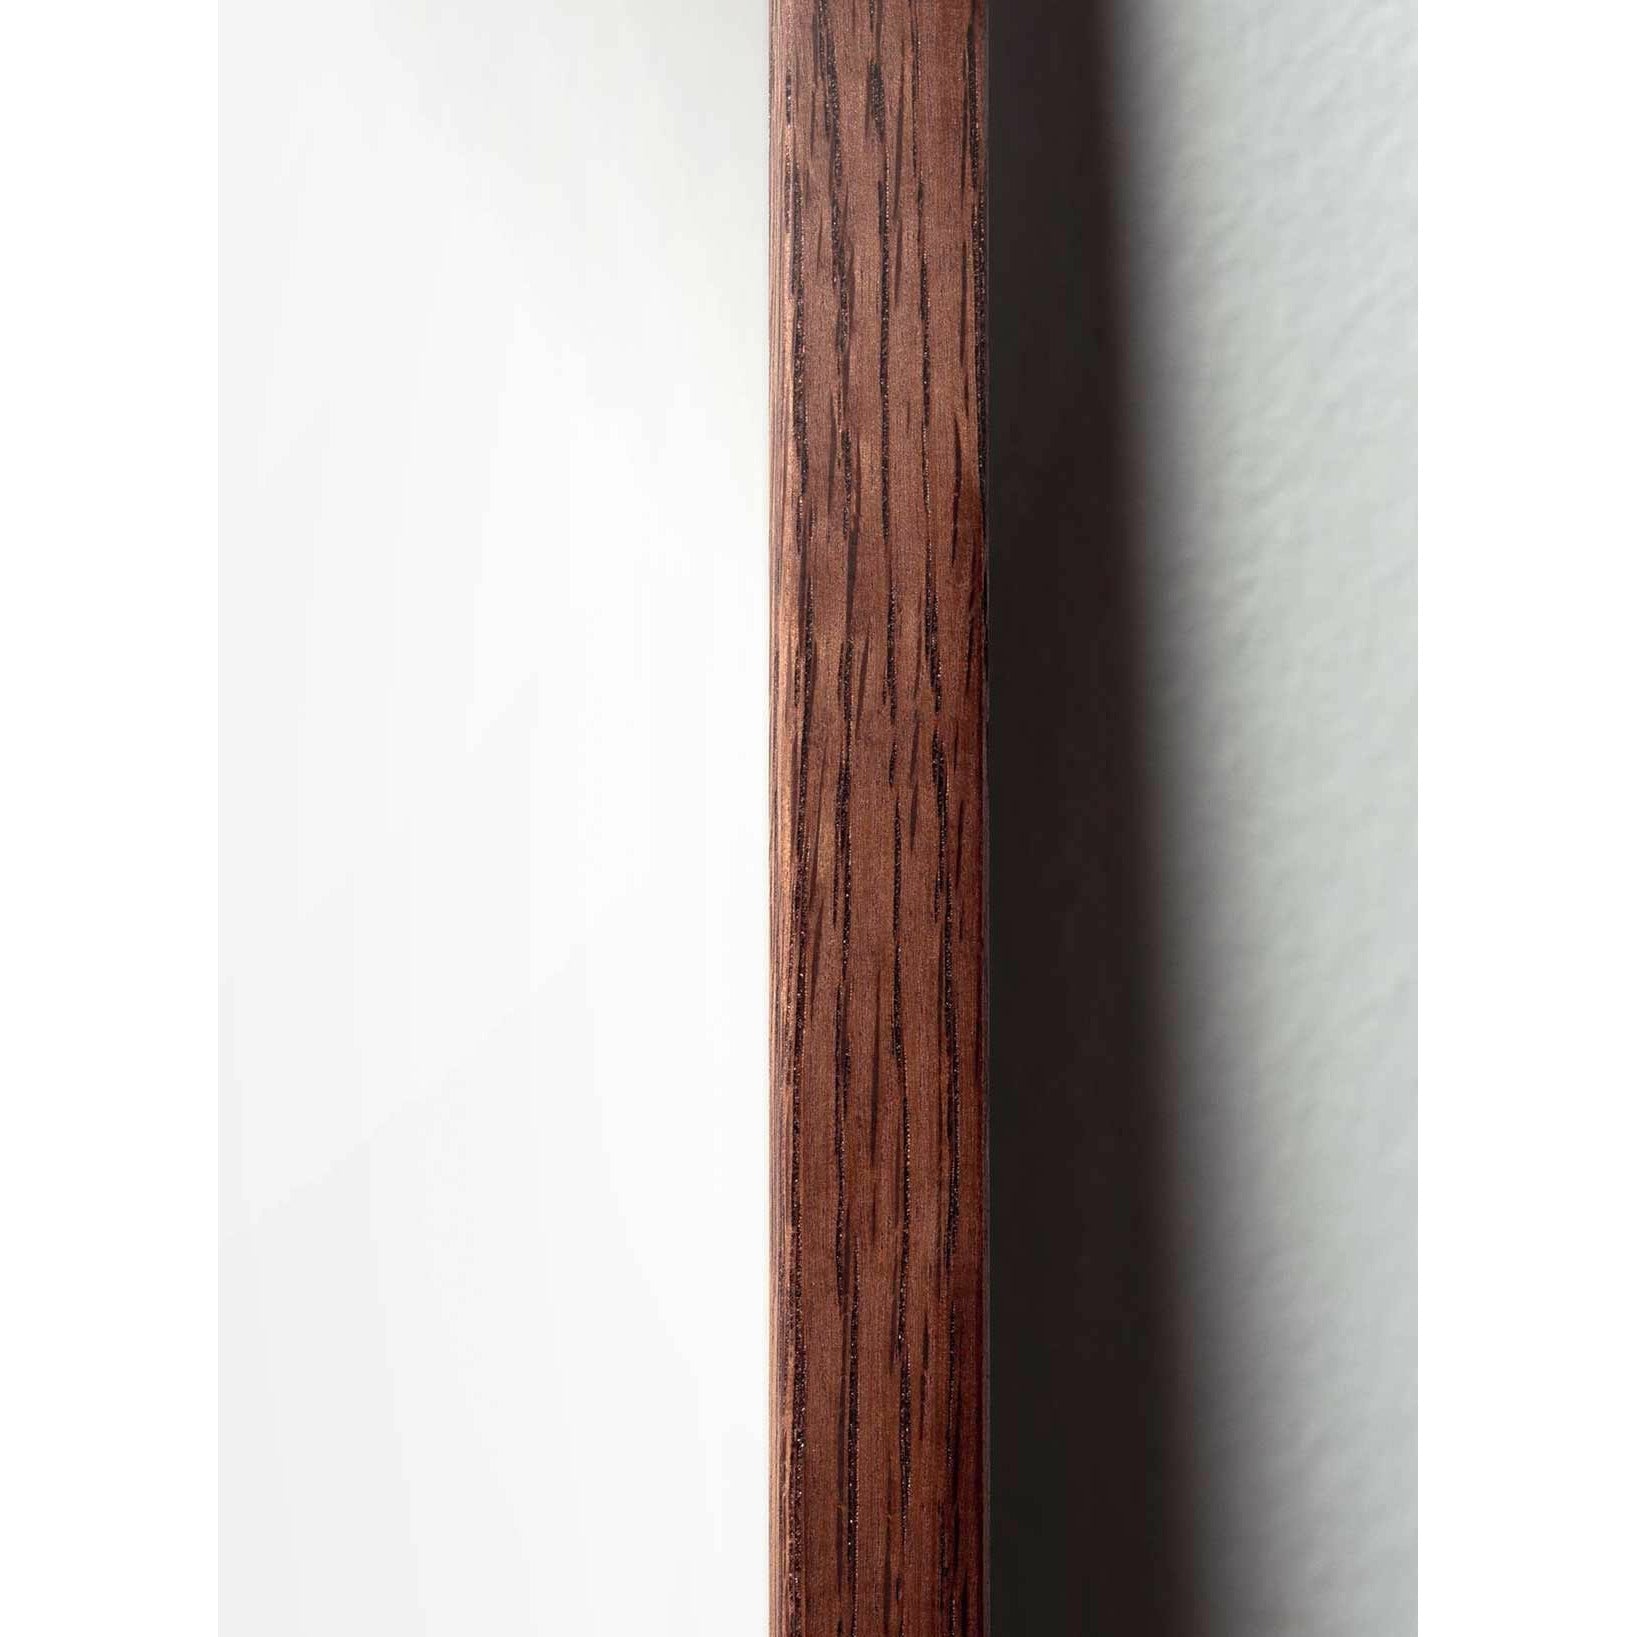 Pomysły plakat linii mrówek, rama wykonana z ciemnego drewna 30x40 cm, białe tło